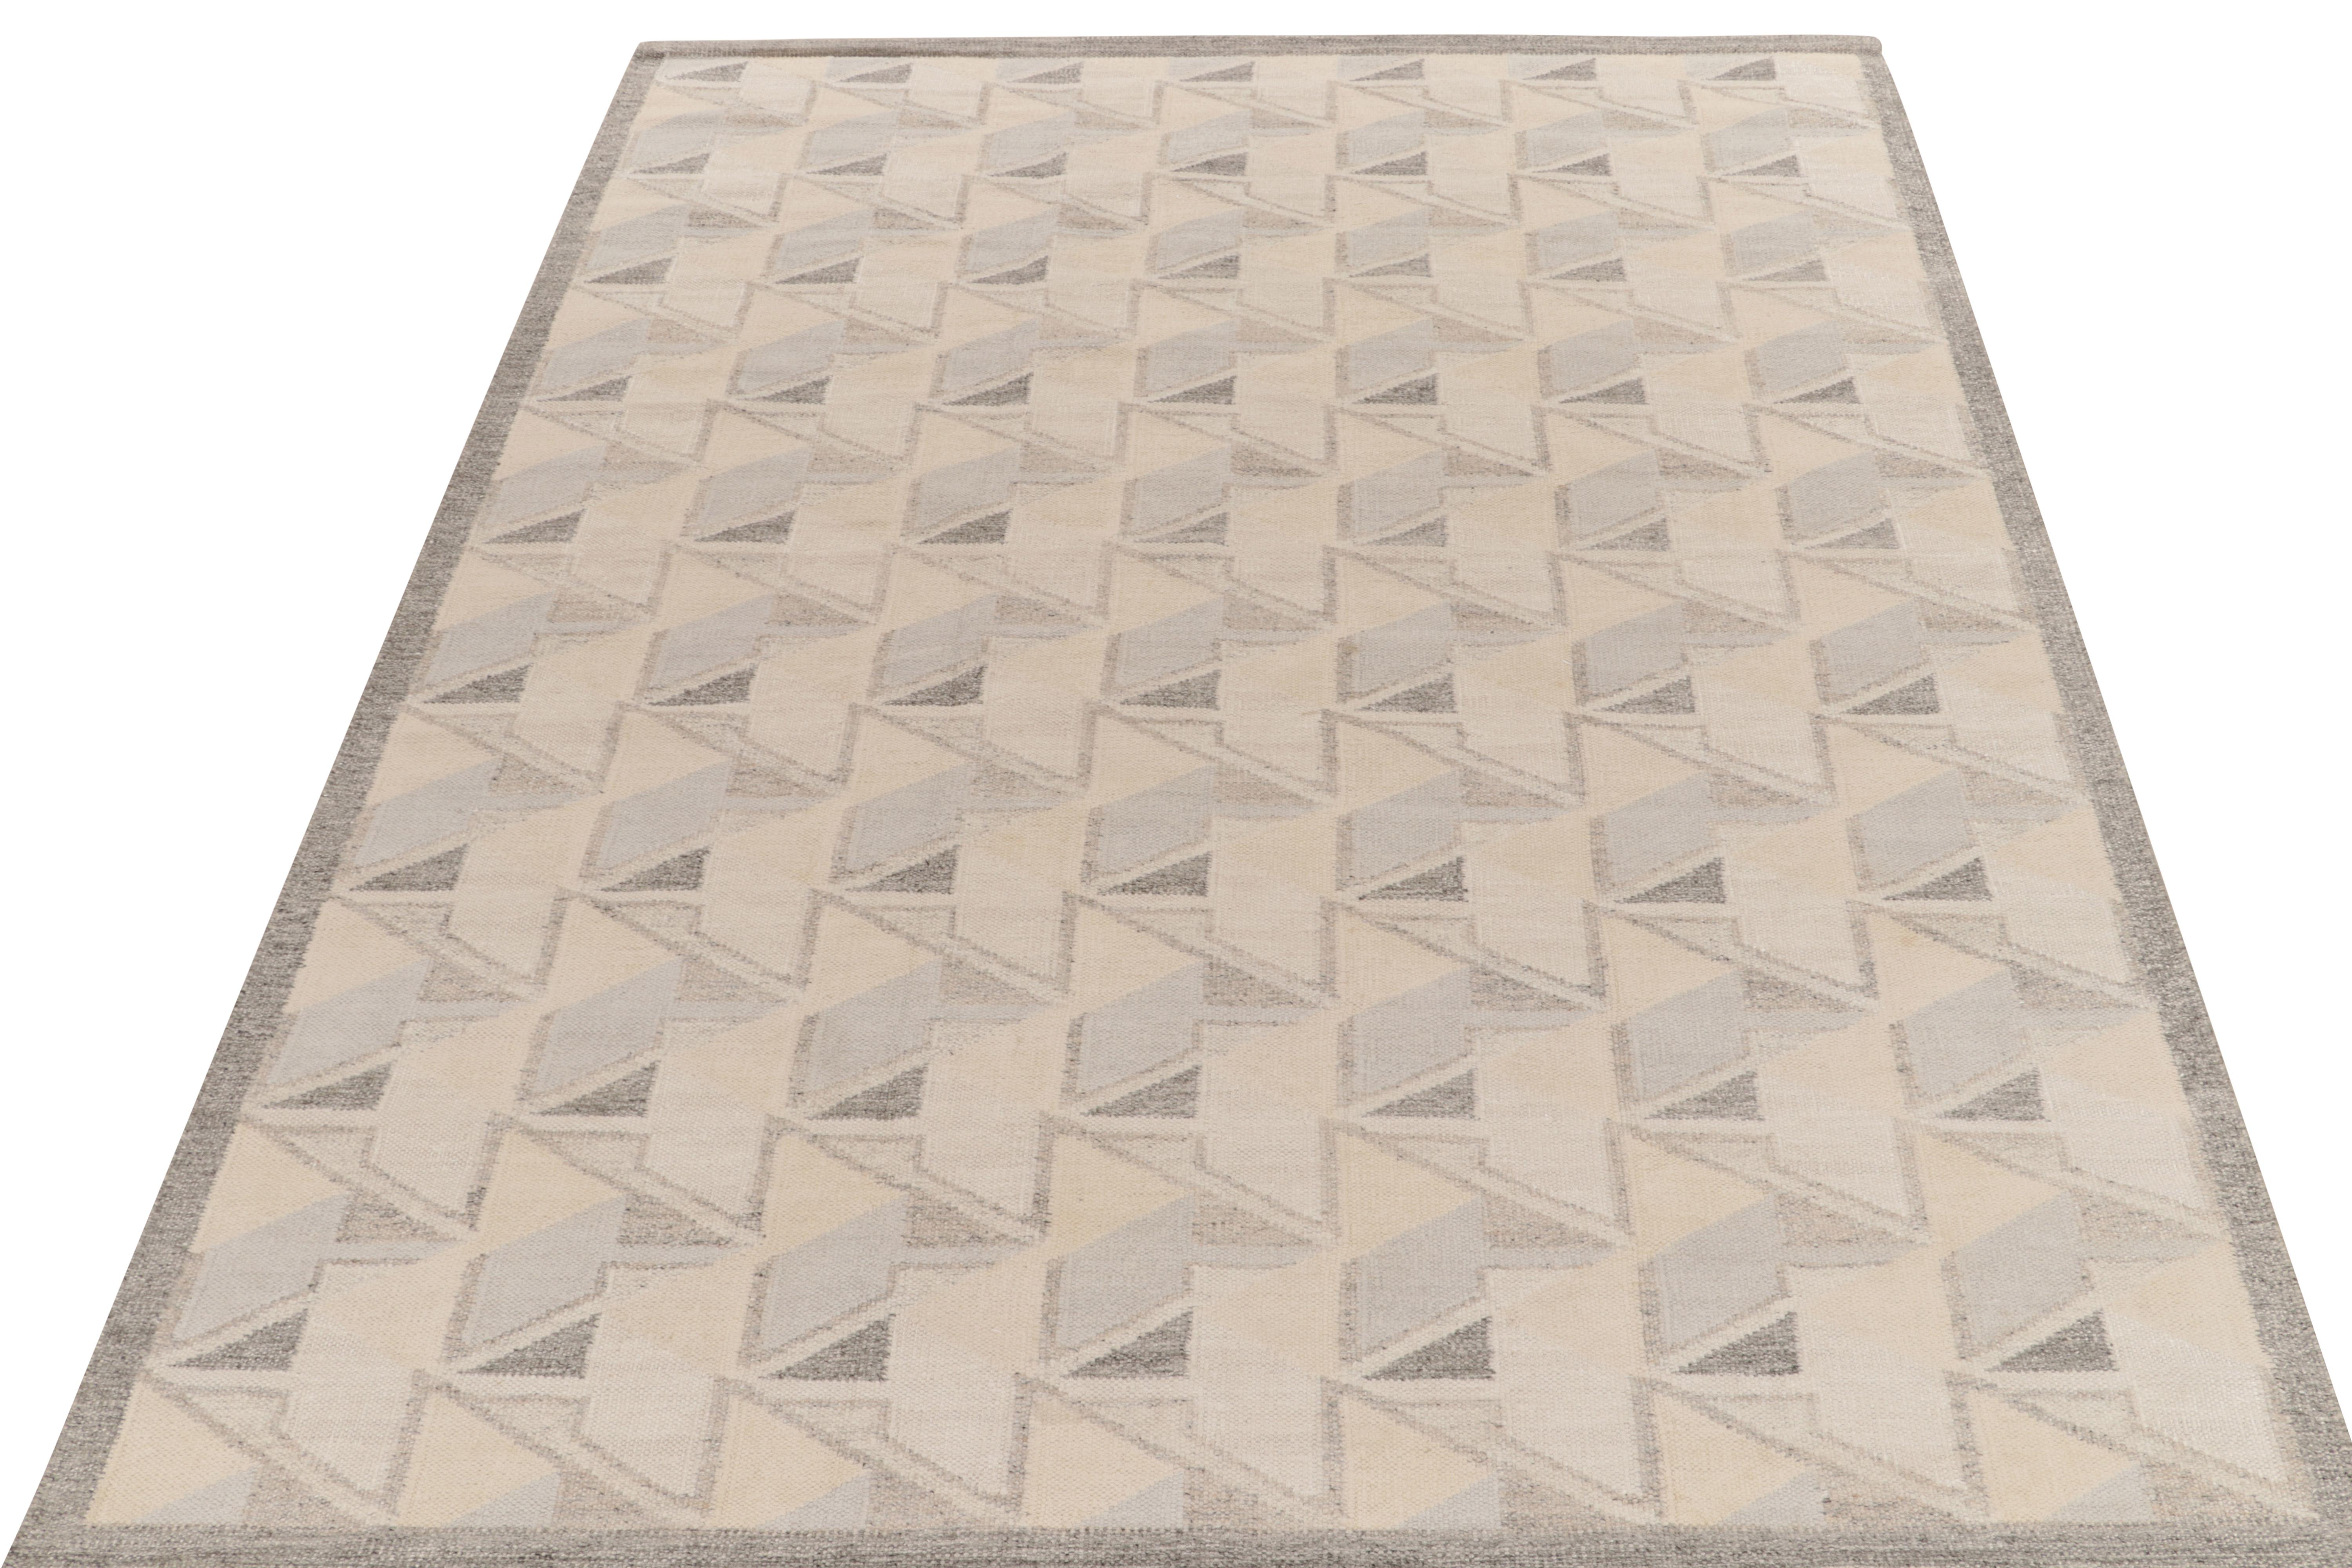 Der skandinavische Kelim von Rug & Kilim aus unserer berühmten Flachgewebe-Kollektion. Dieser Teppich im Format 9x12 genießt die Finesse schwedischer Ästhetik mit einem geschickten geometrischen Muster, das einen 3D-Eindruck vermittelt. Die